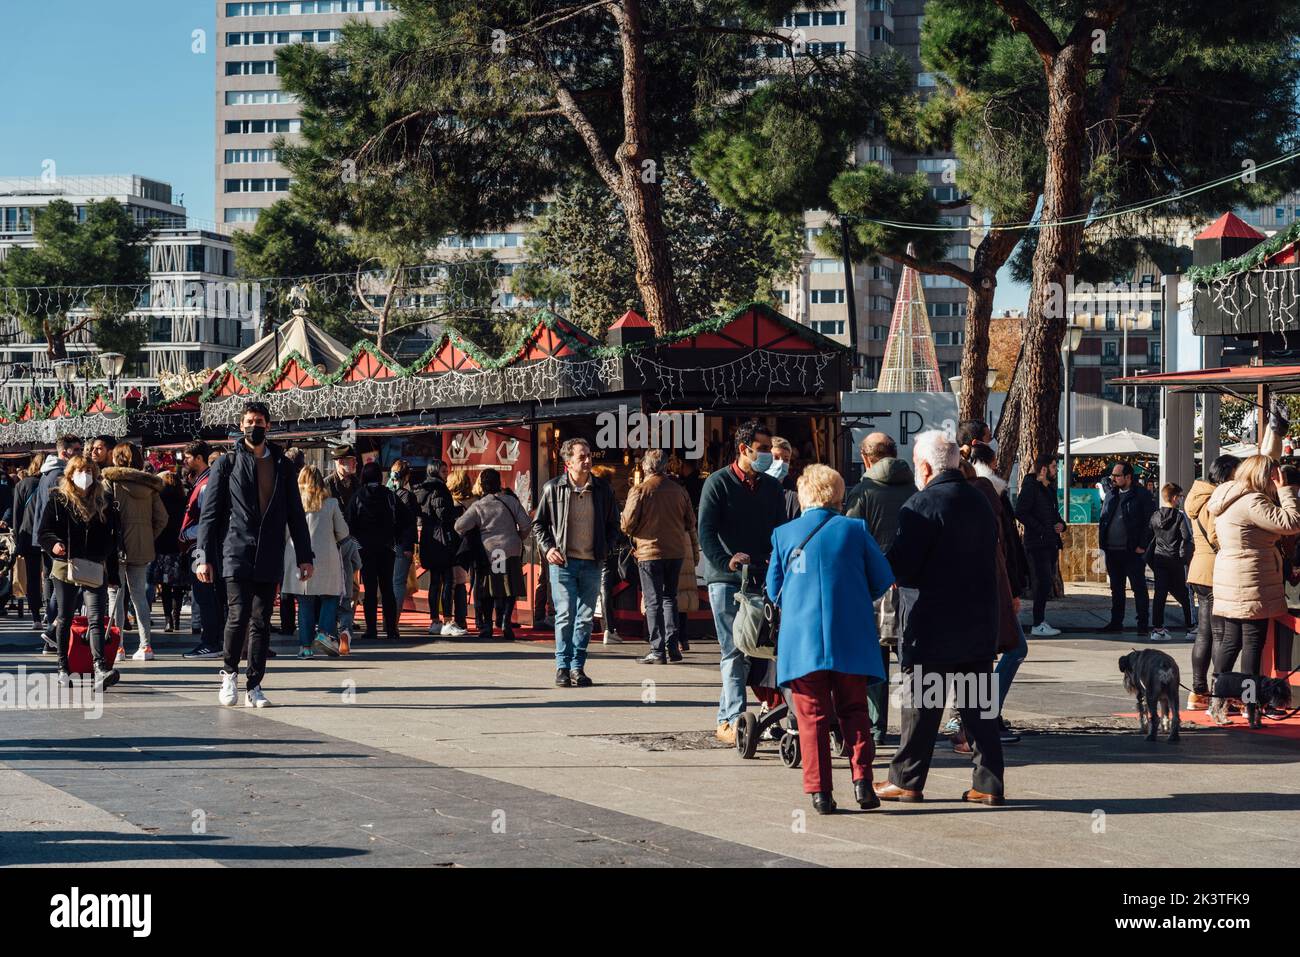 Madrid, Espagne - 12 décembre 2021: Les gens au marché des arts et de l'artisanat sur la Plaza de Colon dans le centre de Madrid. Les gens magasinent dans les stands Banque D'Images